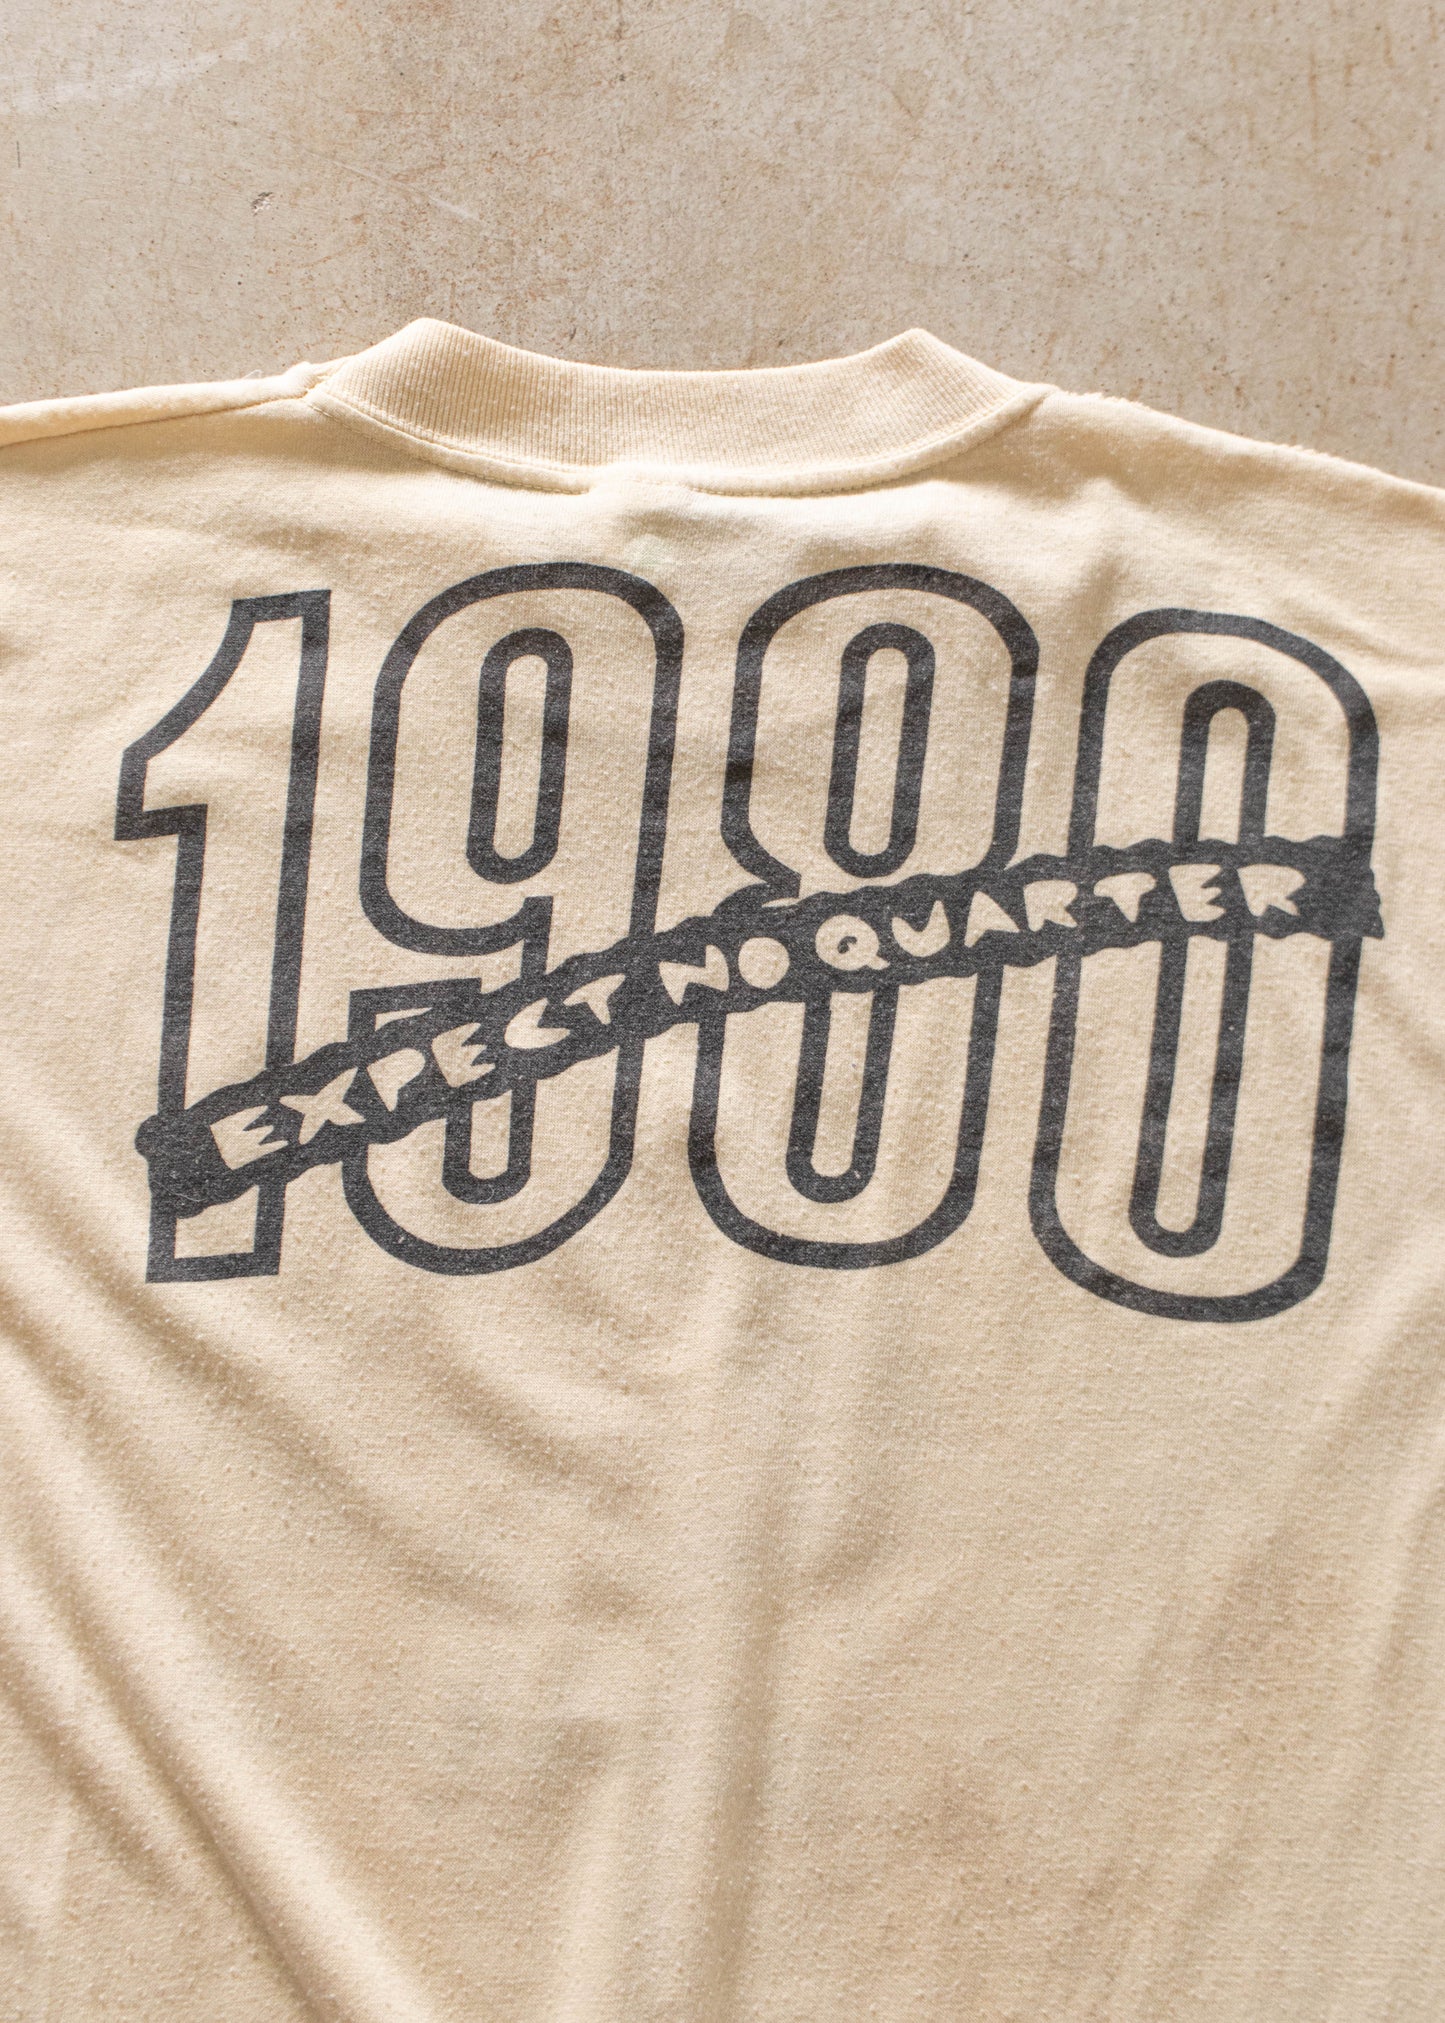 Vintage 1980 ZZ Top Expect No Quarter Tour T-Shirt Size S/M